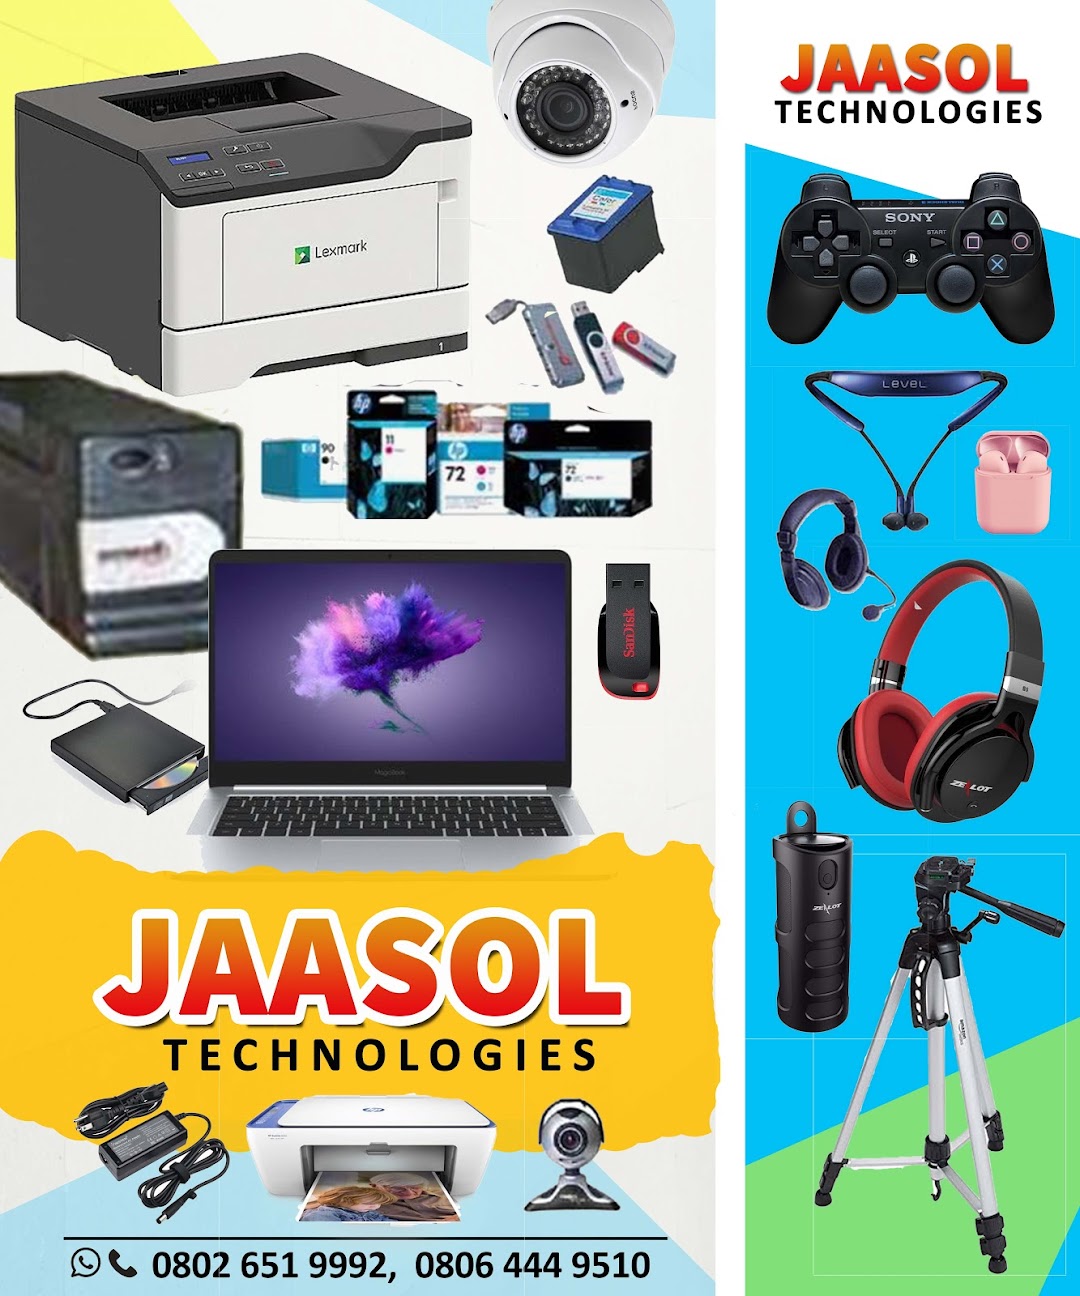 Jaasol Technologies